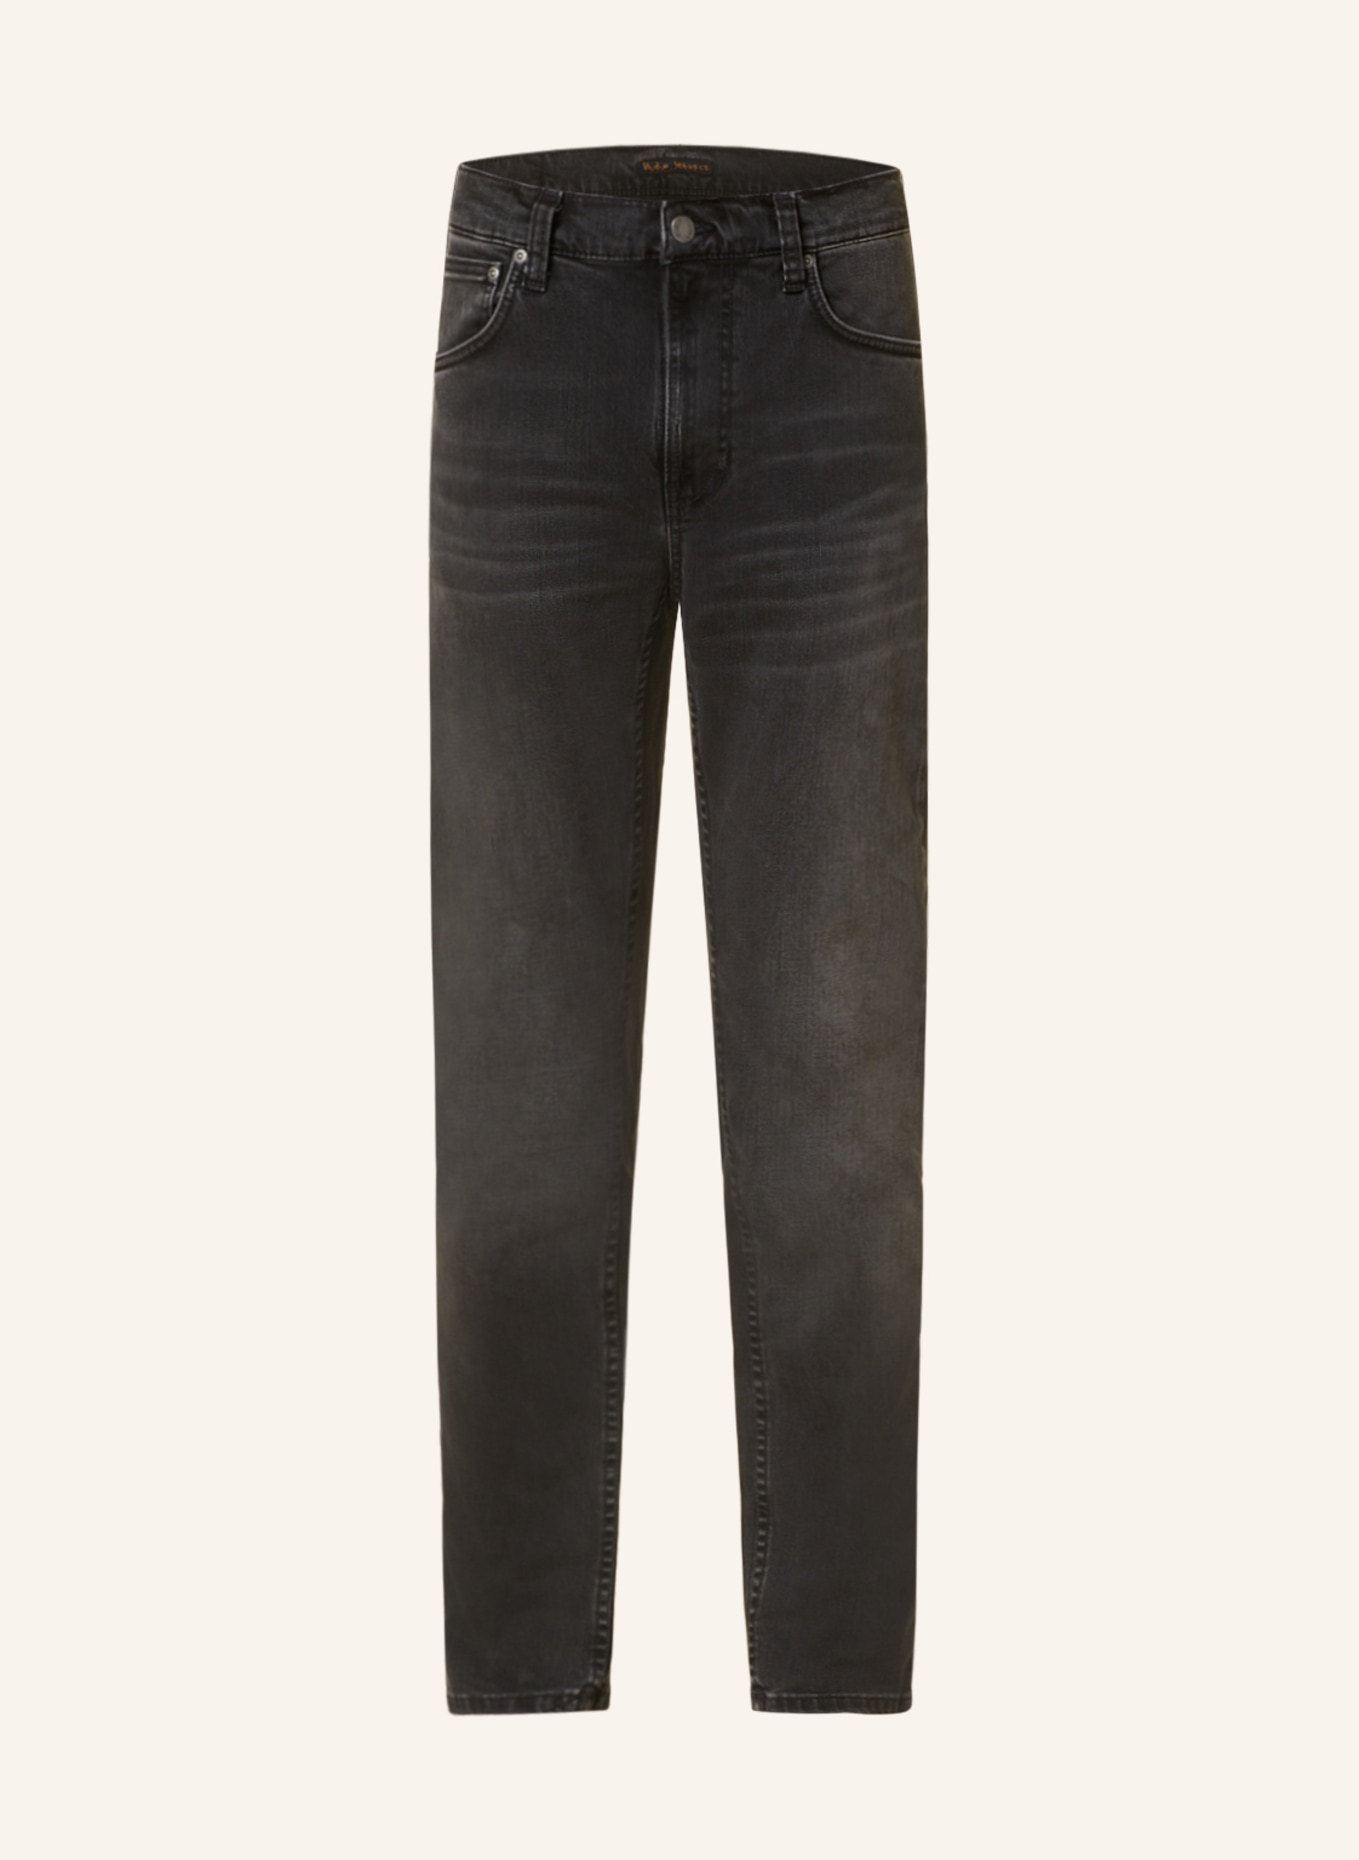 Nudie Jeans Jeans LEAN DEAN Slim Fit, Farbe: Black Eyes (Bild 1)